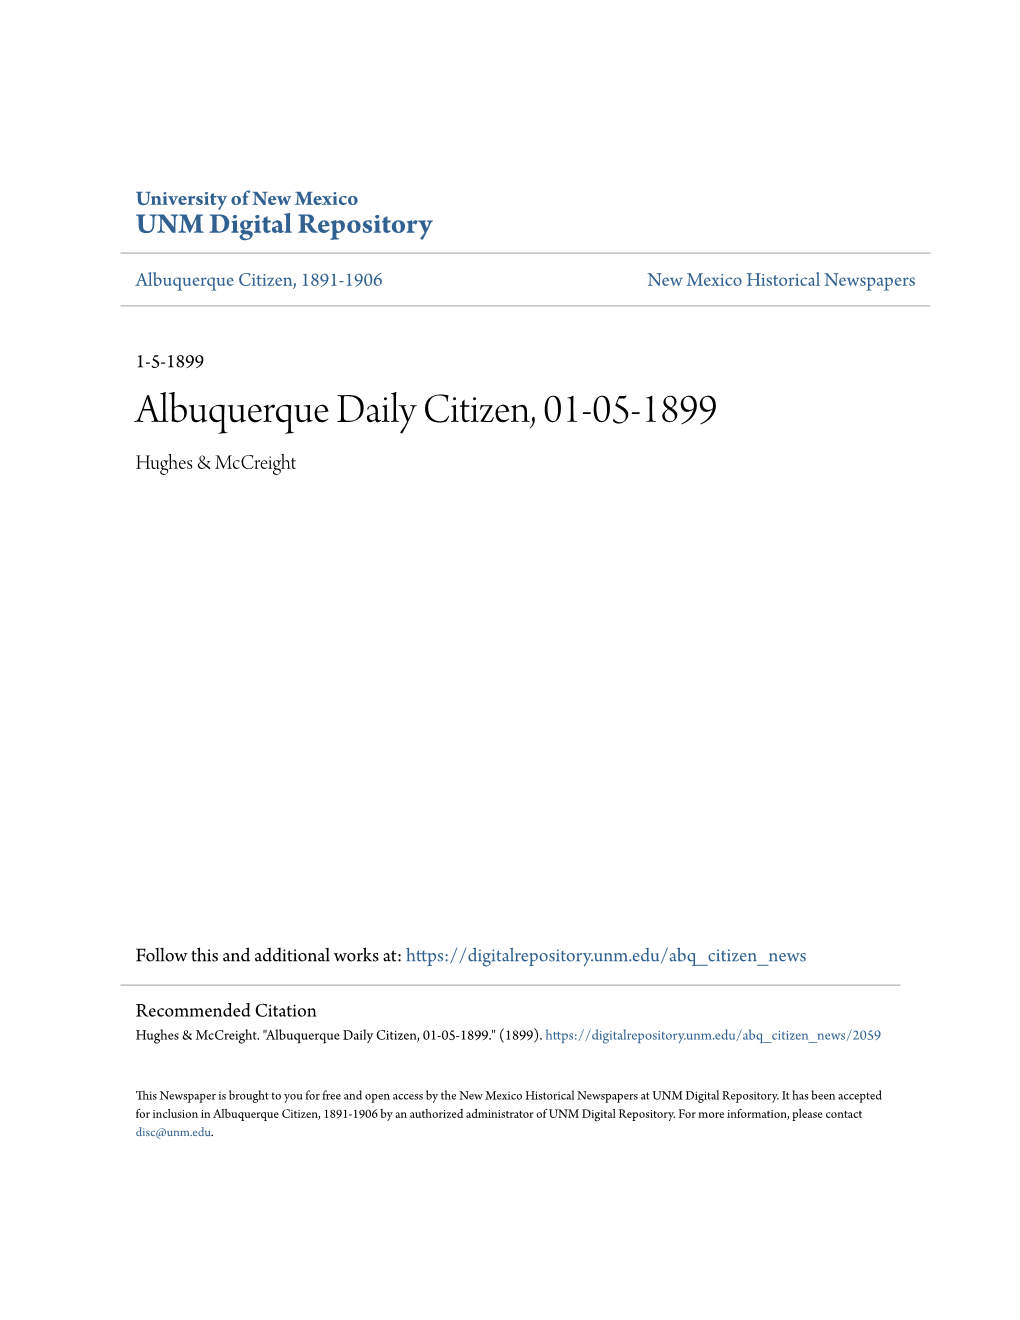 Albuquerque Daily Citizen, 01-05-1899 Hughes & Mccreight